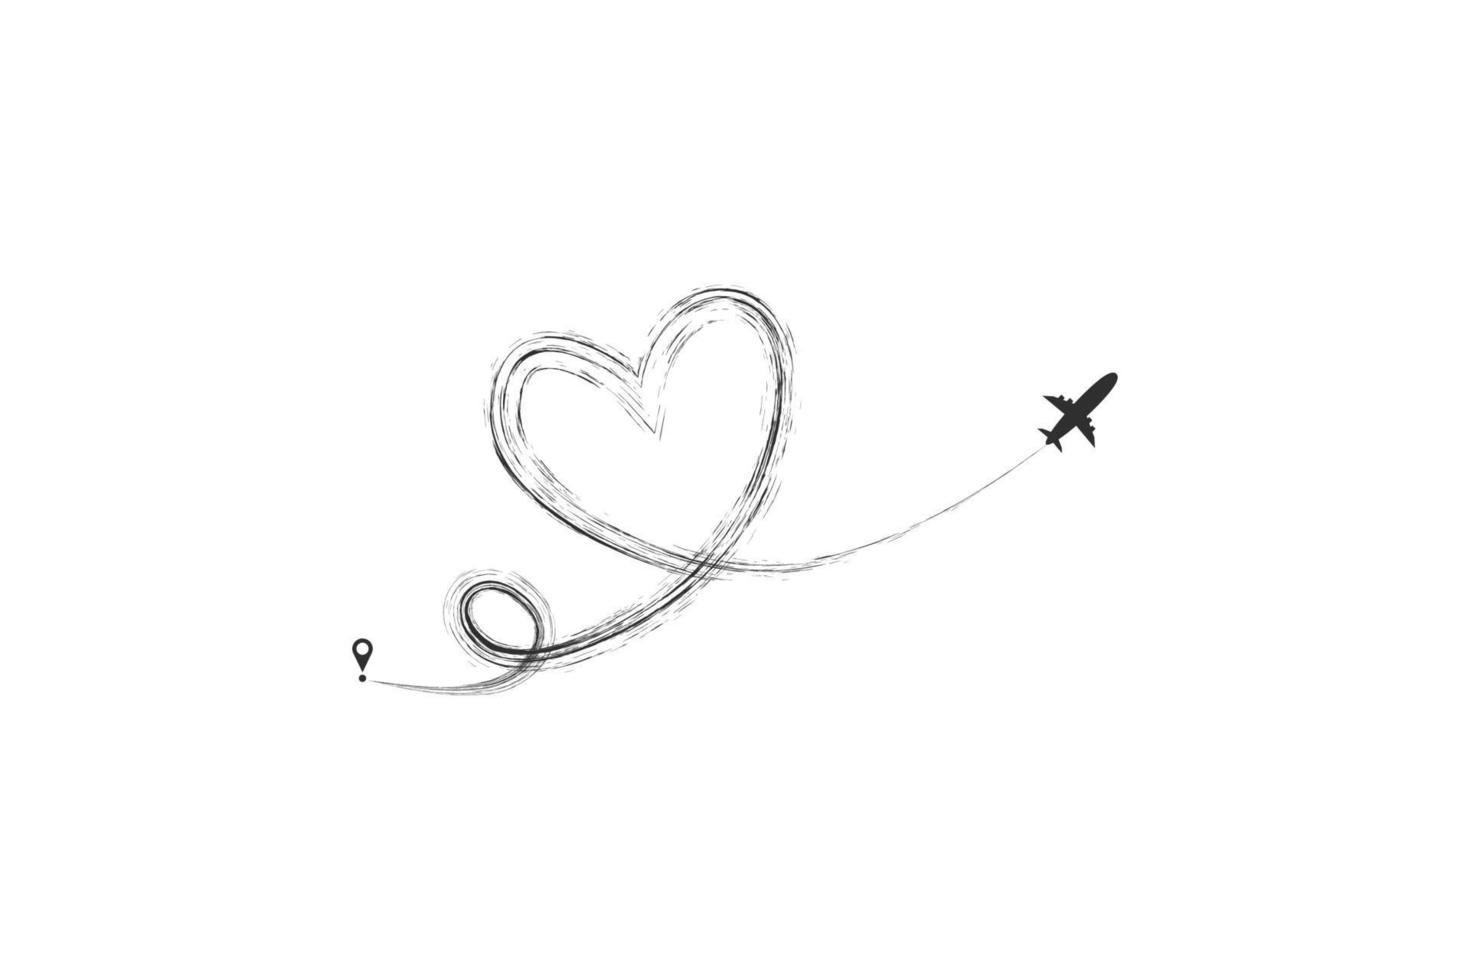 vliegtuig en zijn track in de vorm van een hart op een witte achtergrond. vector illustratie. vliegroute van het vliegtuig en zijn route